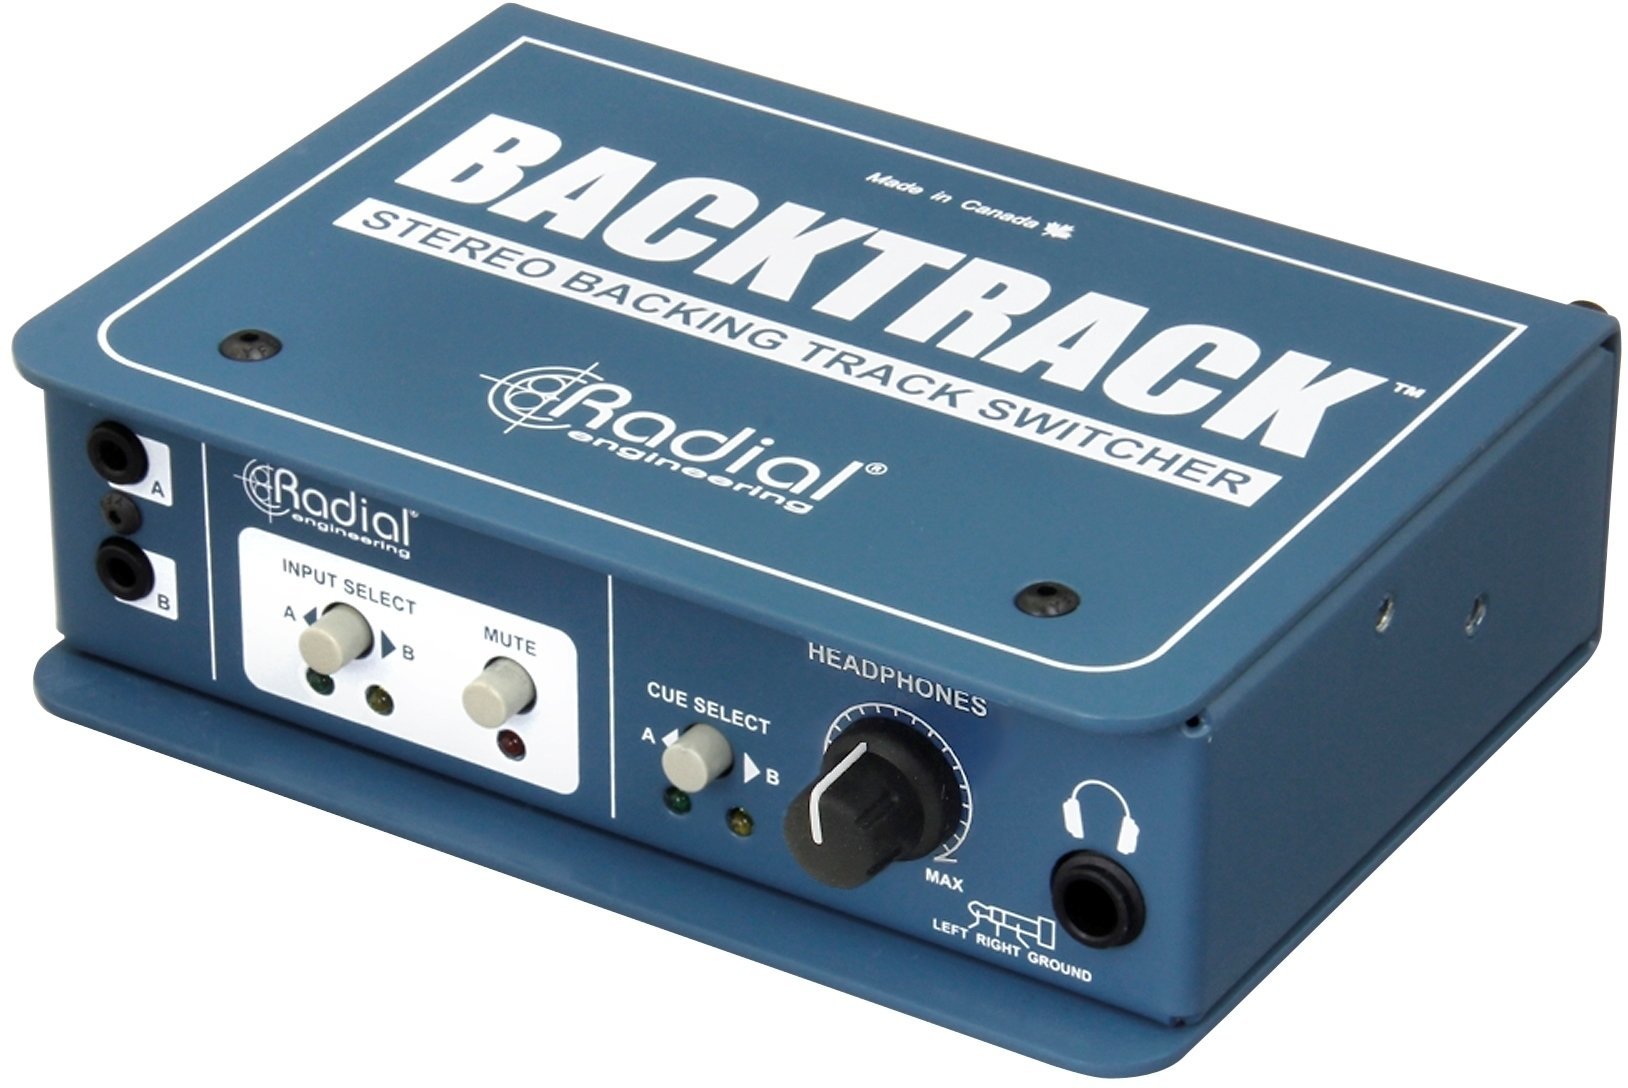 Procesor dźwiękowy/Procesor sygnałowy Radial Backtrack